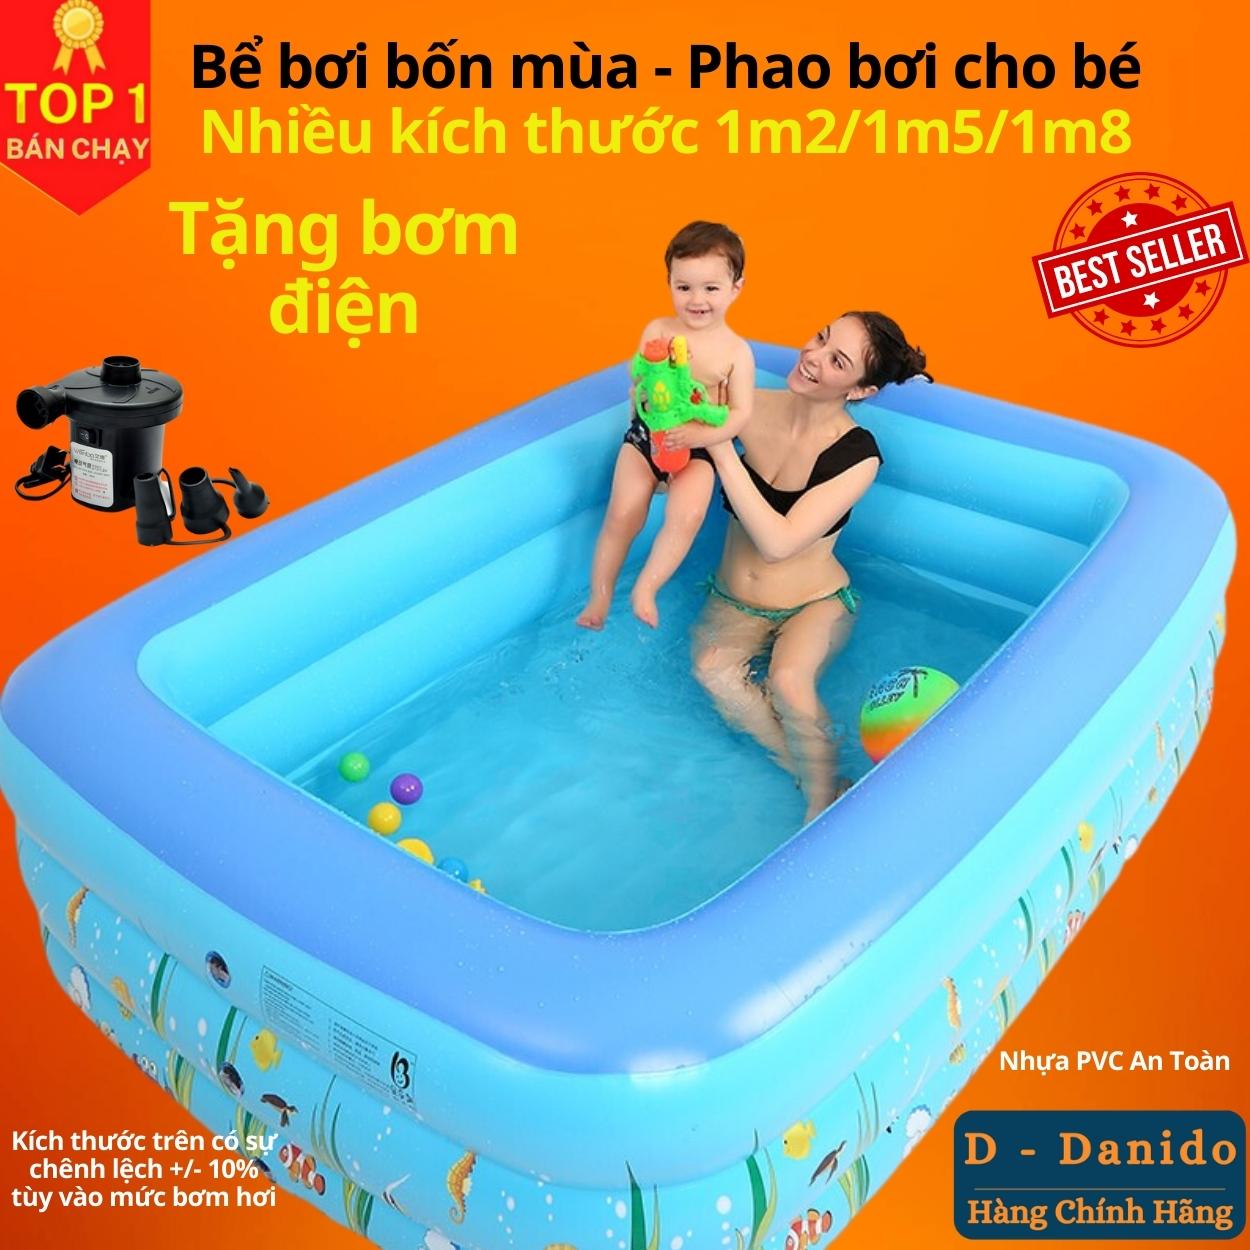 Hình ảnh Bể bơi bơm hơi trẻ em chính hãng D Danido, Phao bơi cho bé 1.2m/1.5m/1.8m chất lượng, bền đẹp, 2 tầng - 3 tầng, dày dặn, chống trượt, Bể bơi cho bé, Hồ bơi nhân tạo